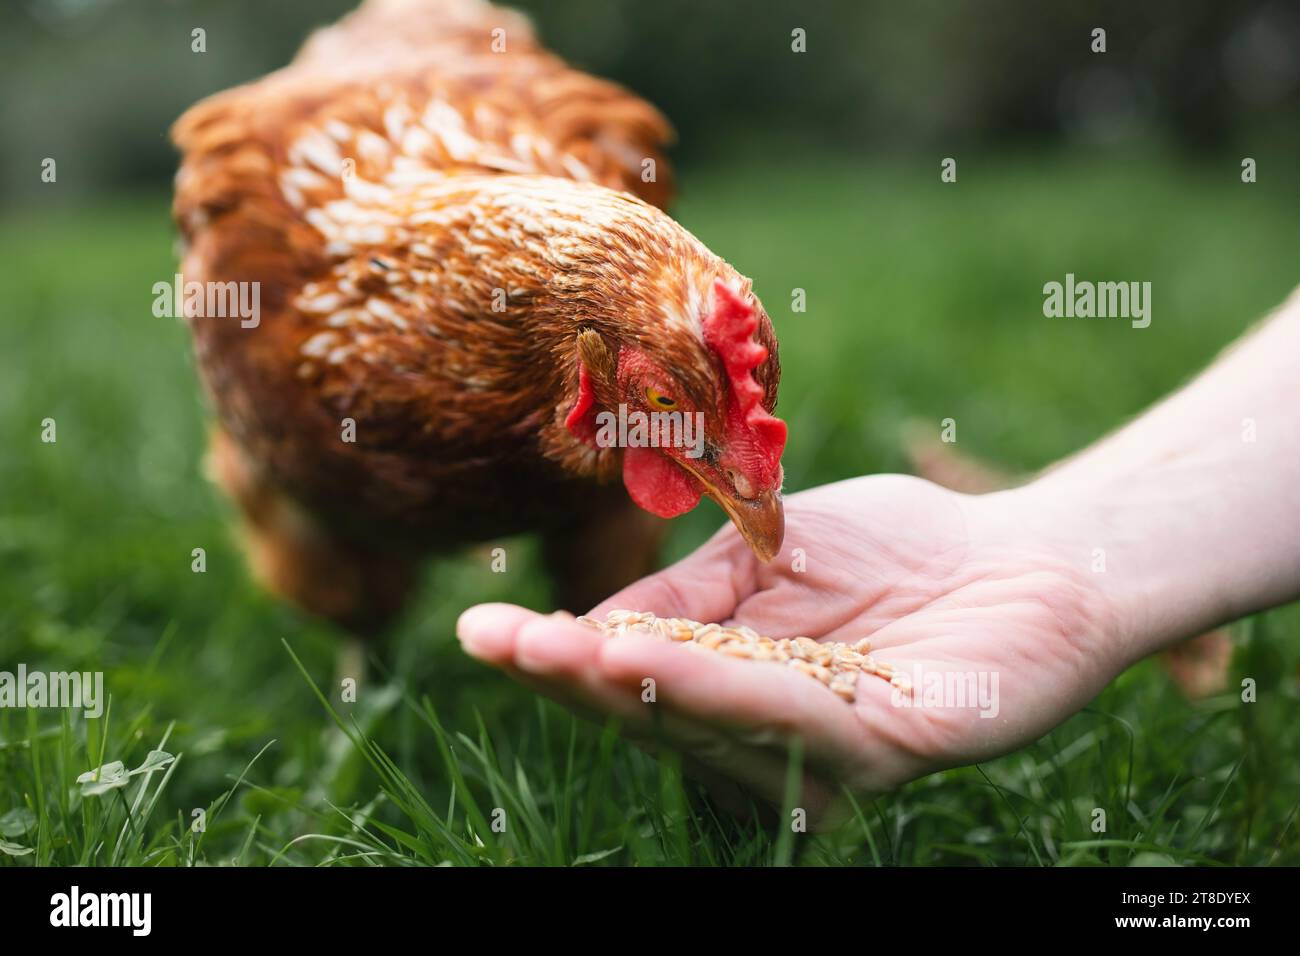 L'agricoltore sta nutrendo la gallina dalla mano. Pollo che becca i chicchi dalla mano dell'uomo nell'erba verde. Temi agricoltura biologica, cura e fiducia. Foto Stock